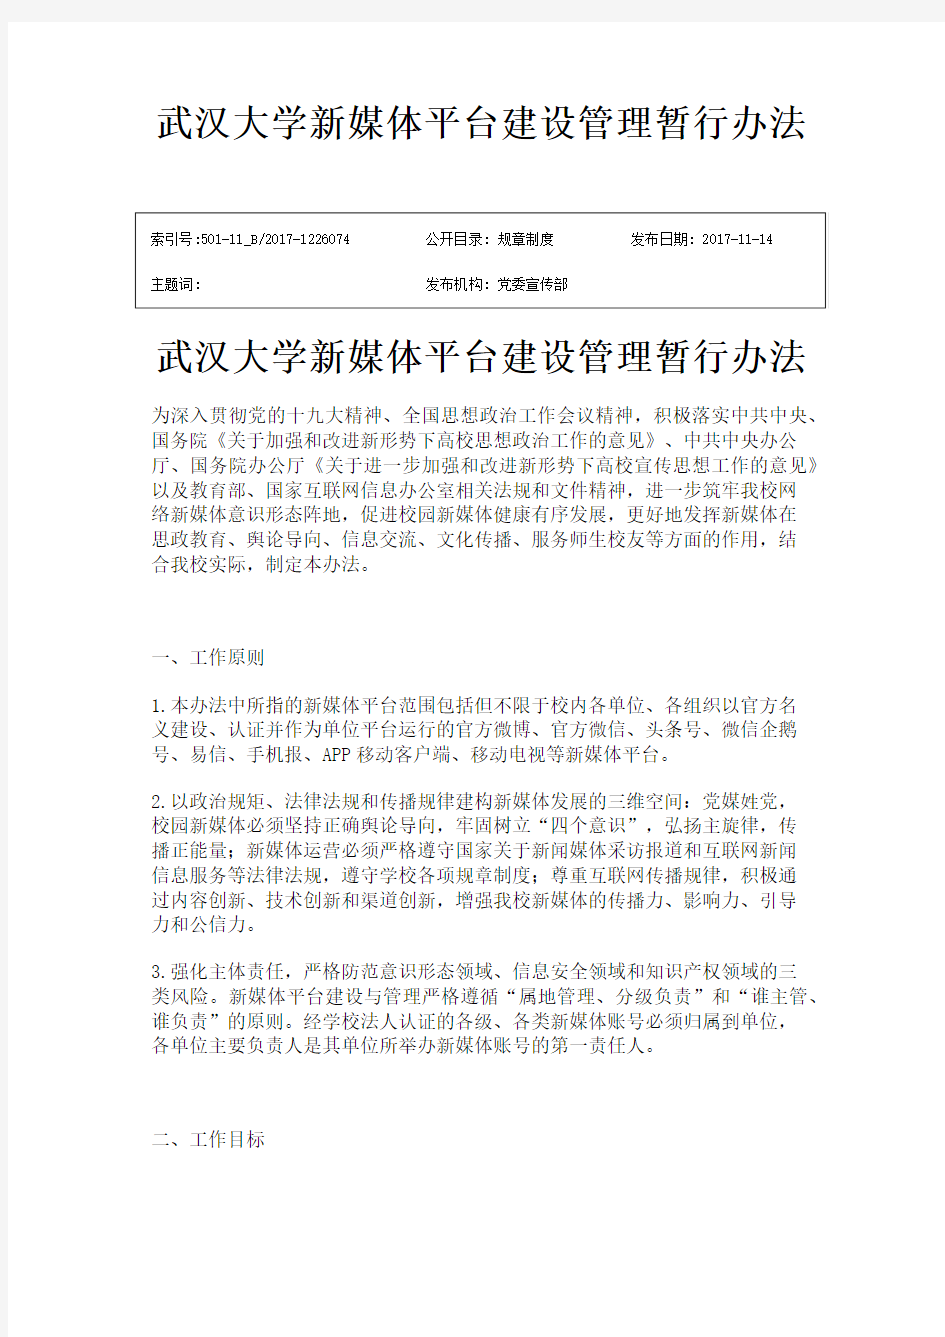 武汉大学新媒体平台建设管理暂行办法